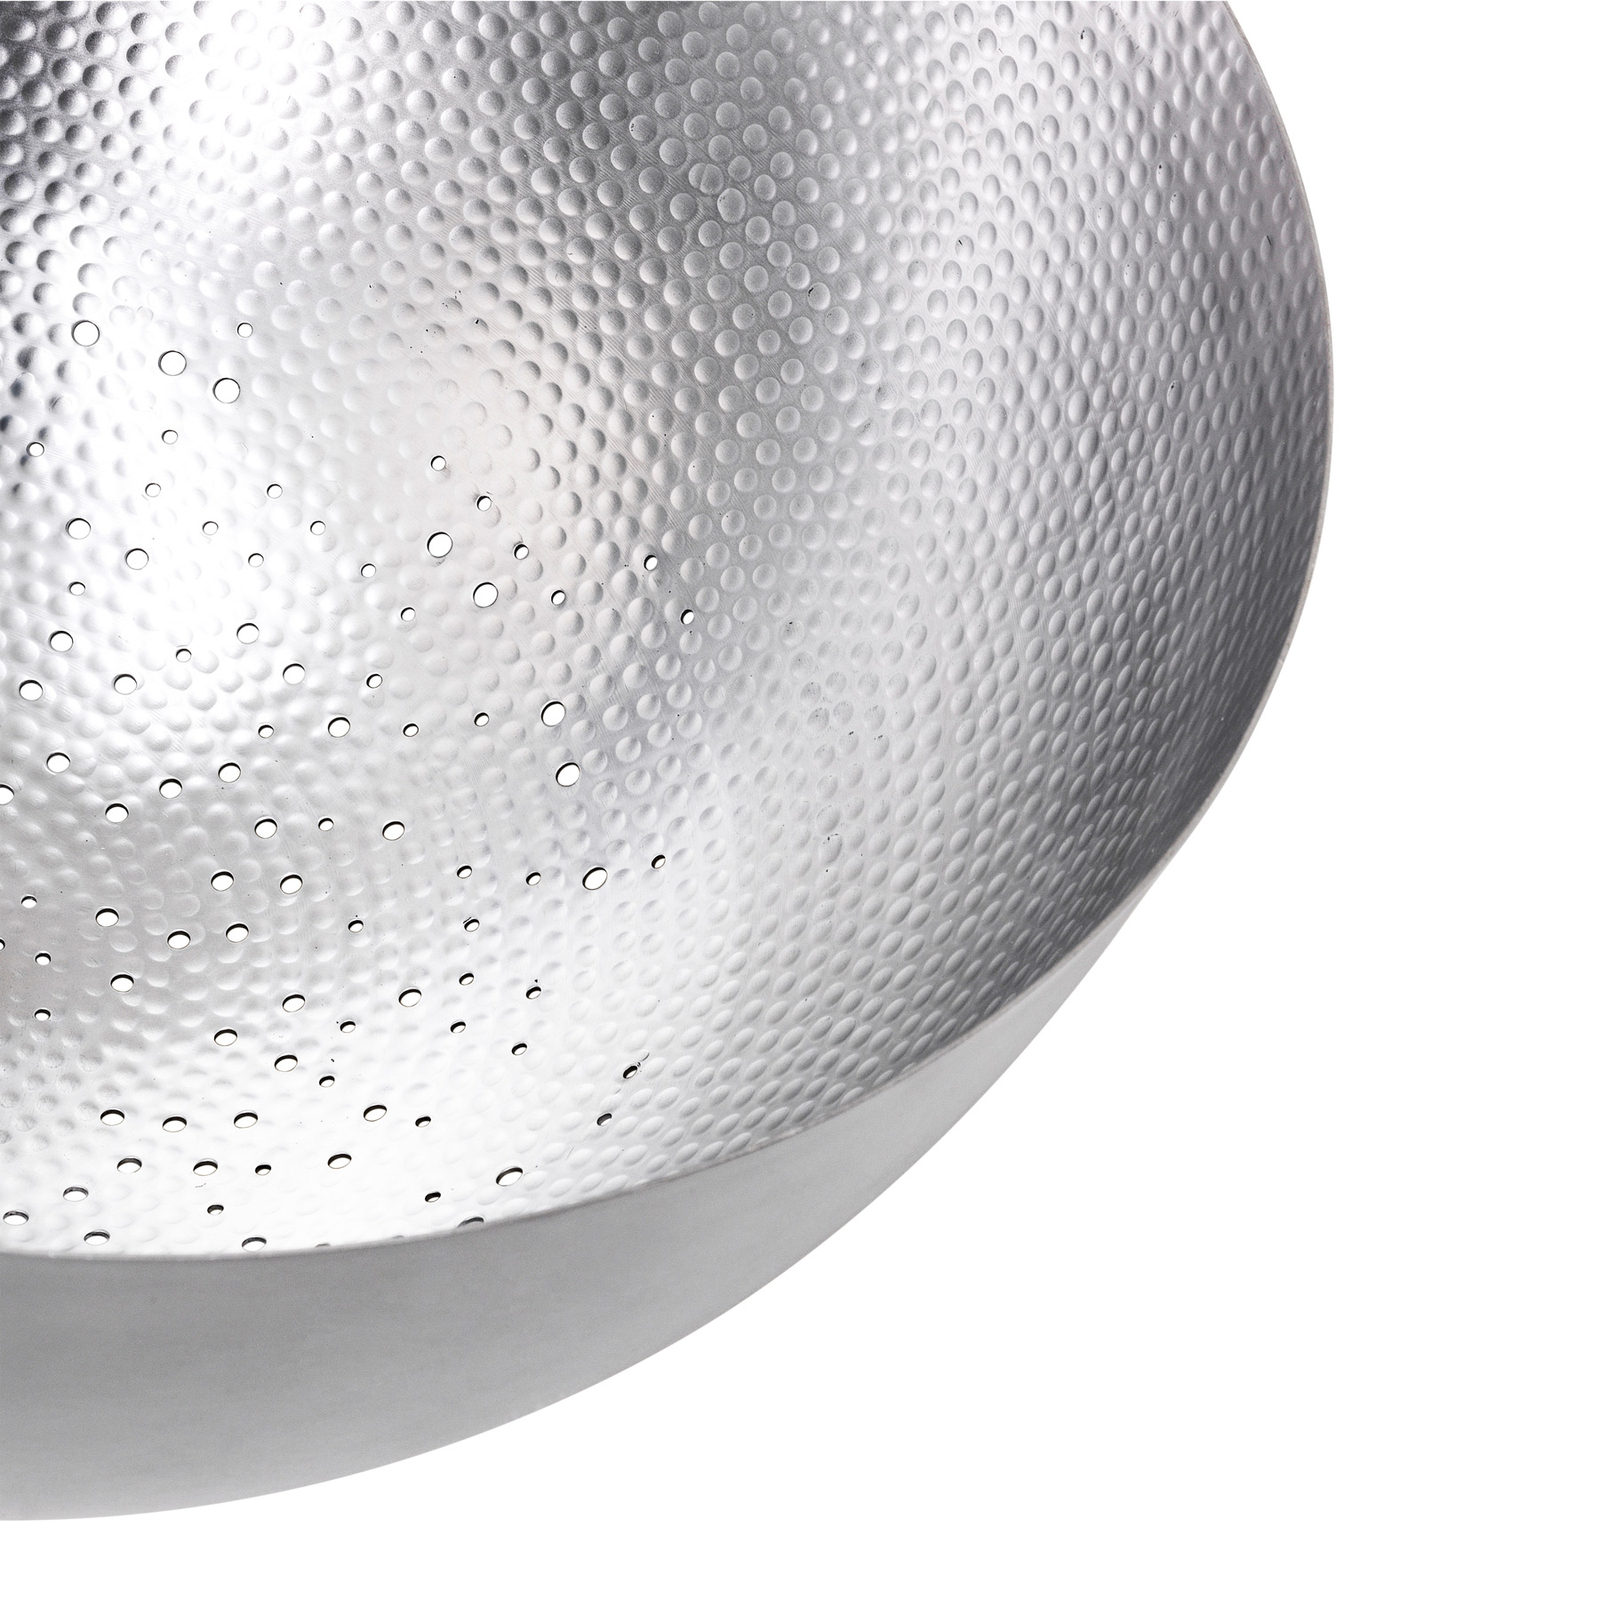 Mater Shade Light riippuvalaisin, alumiinia, Ø 60 cm